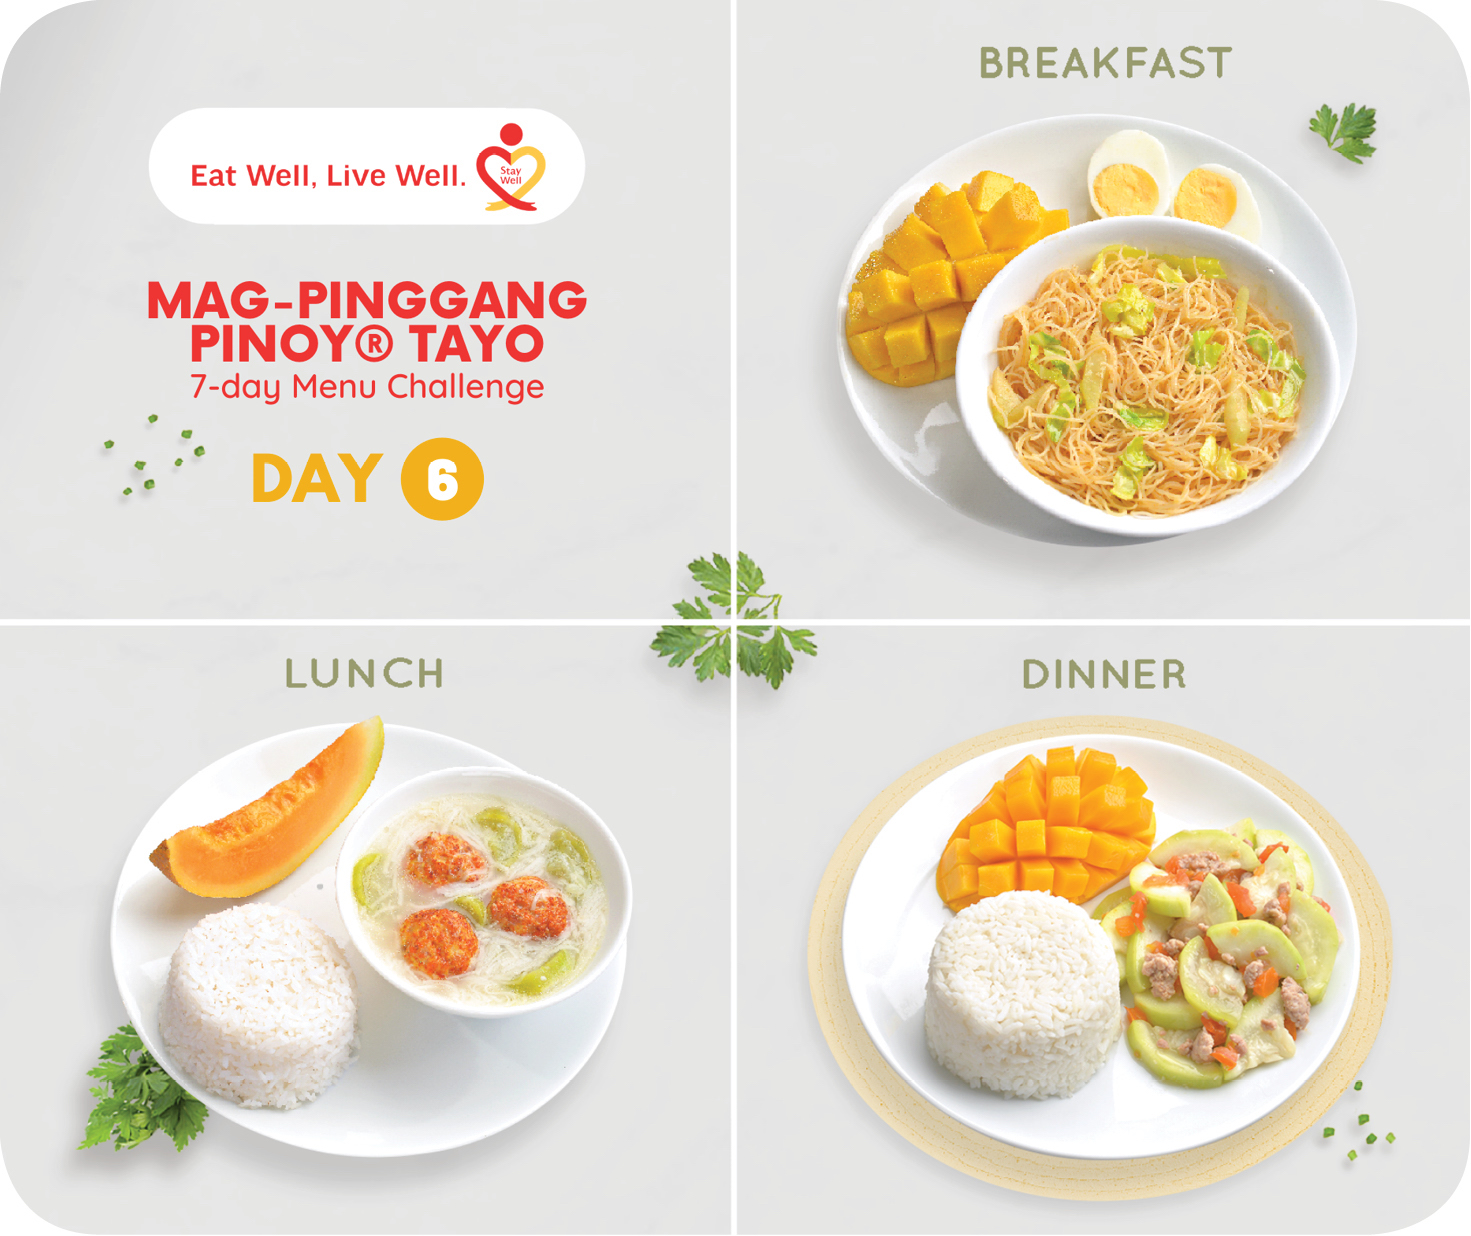 Day 6 Mag-Pinggang Pinoy® Tayo 7-day Menu Challenge